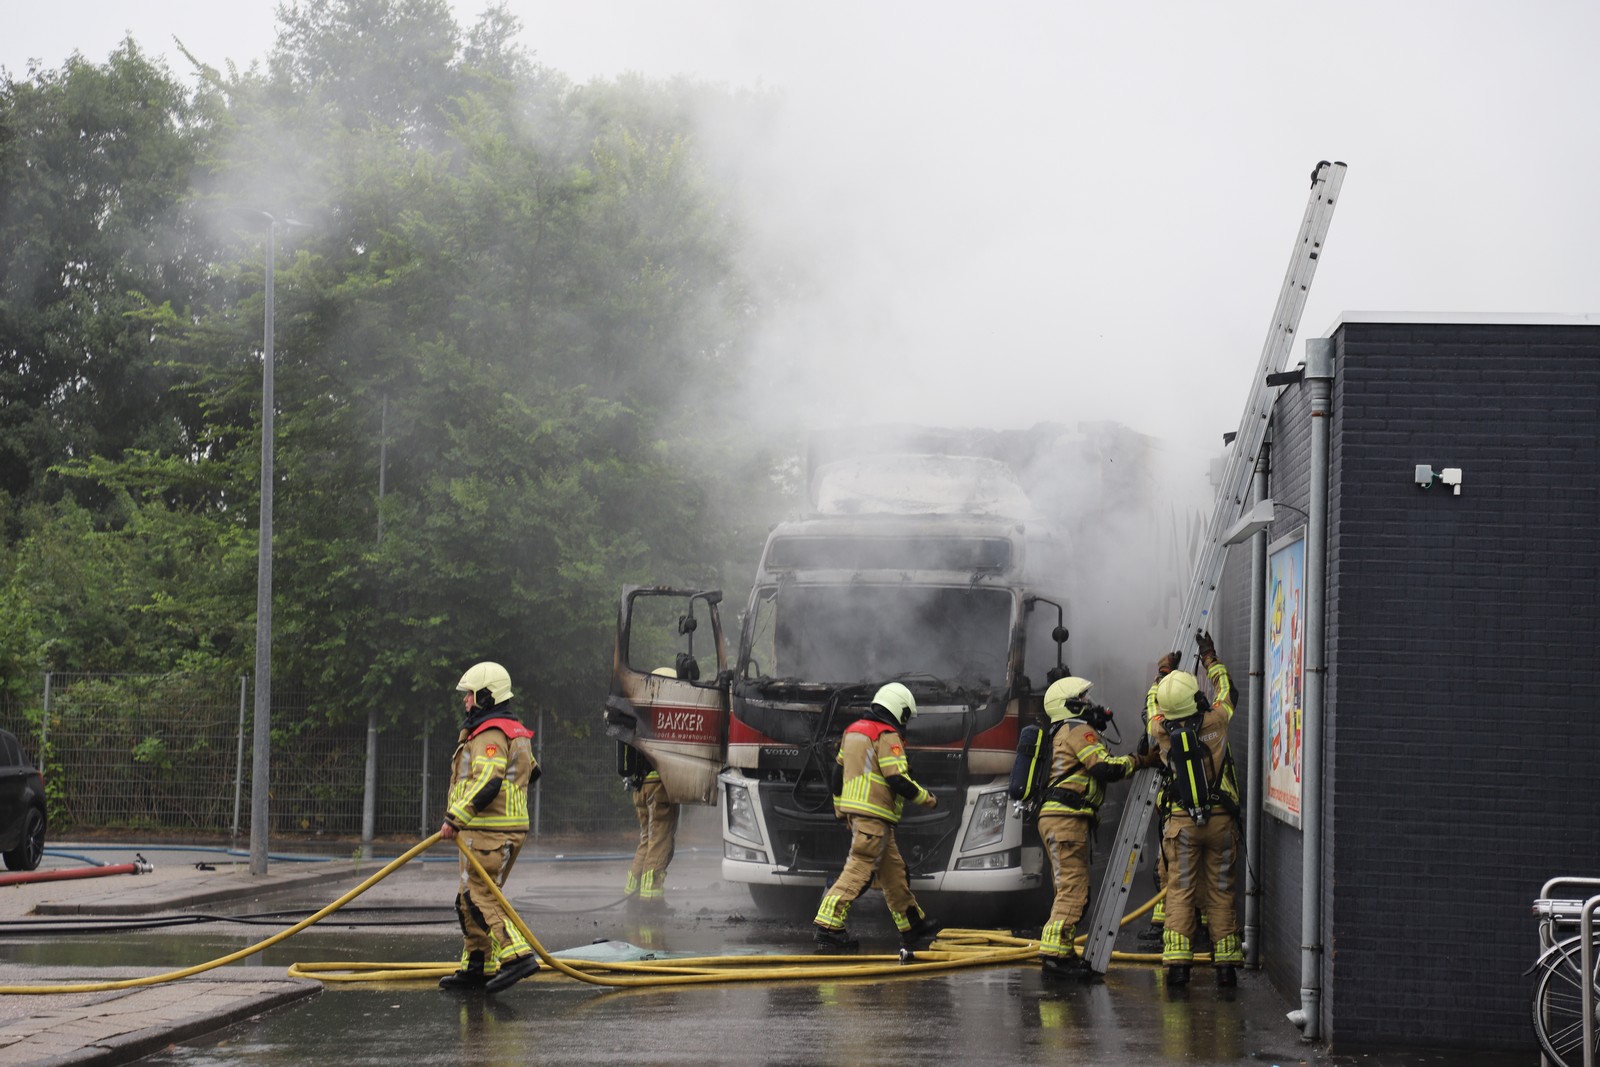 Vrachtwagen(cabine) volledig uitgebrand